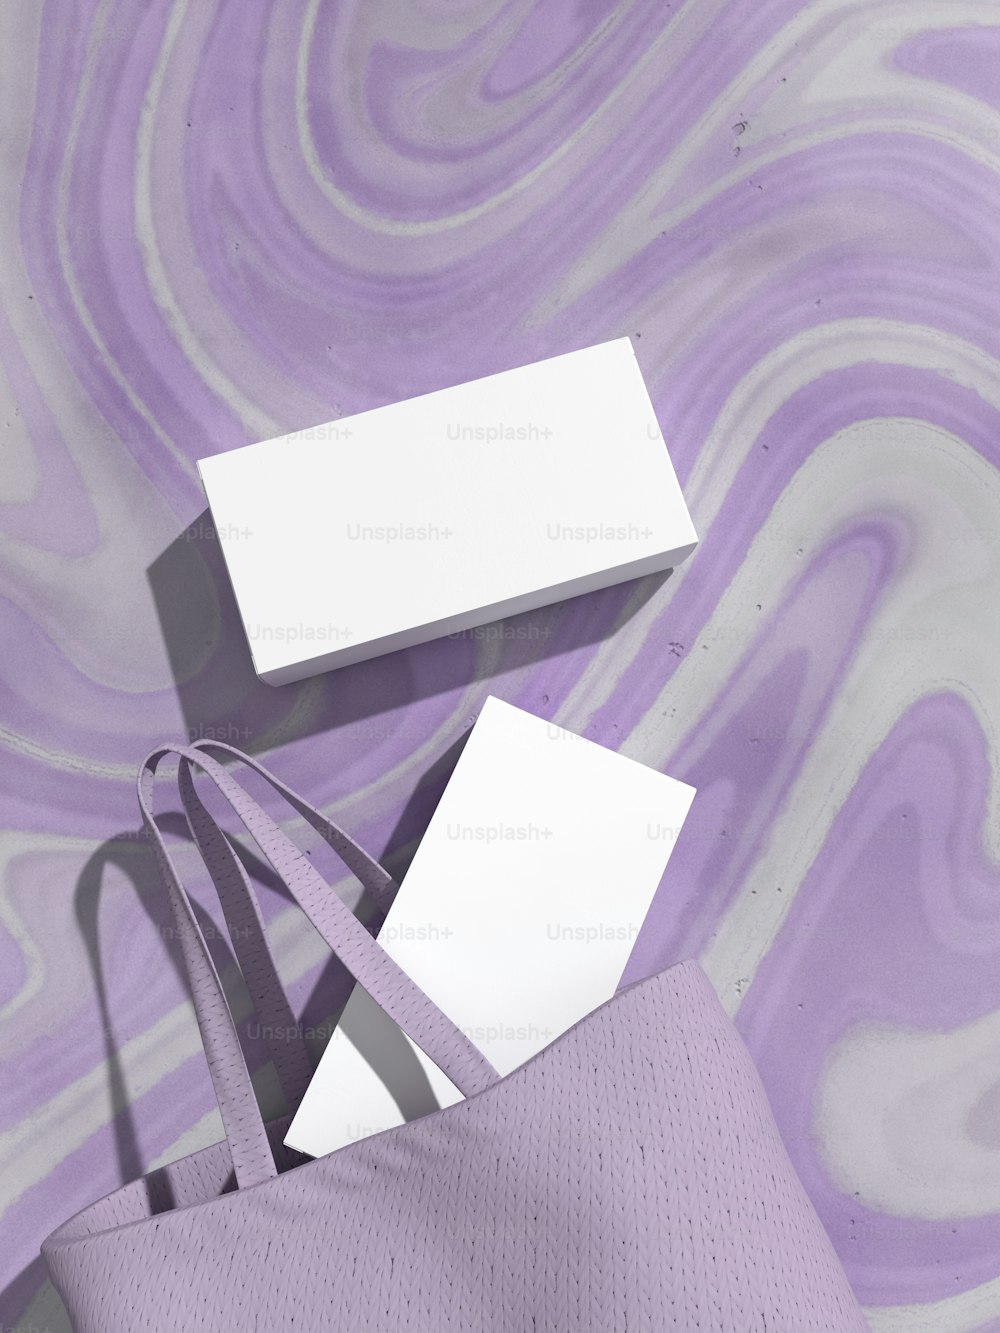 Una bolsa púrpura con un cuadrado blanco encima